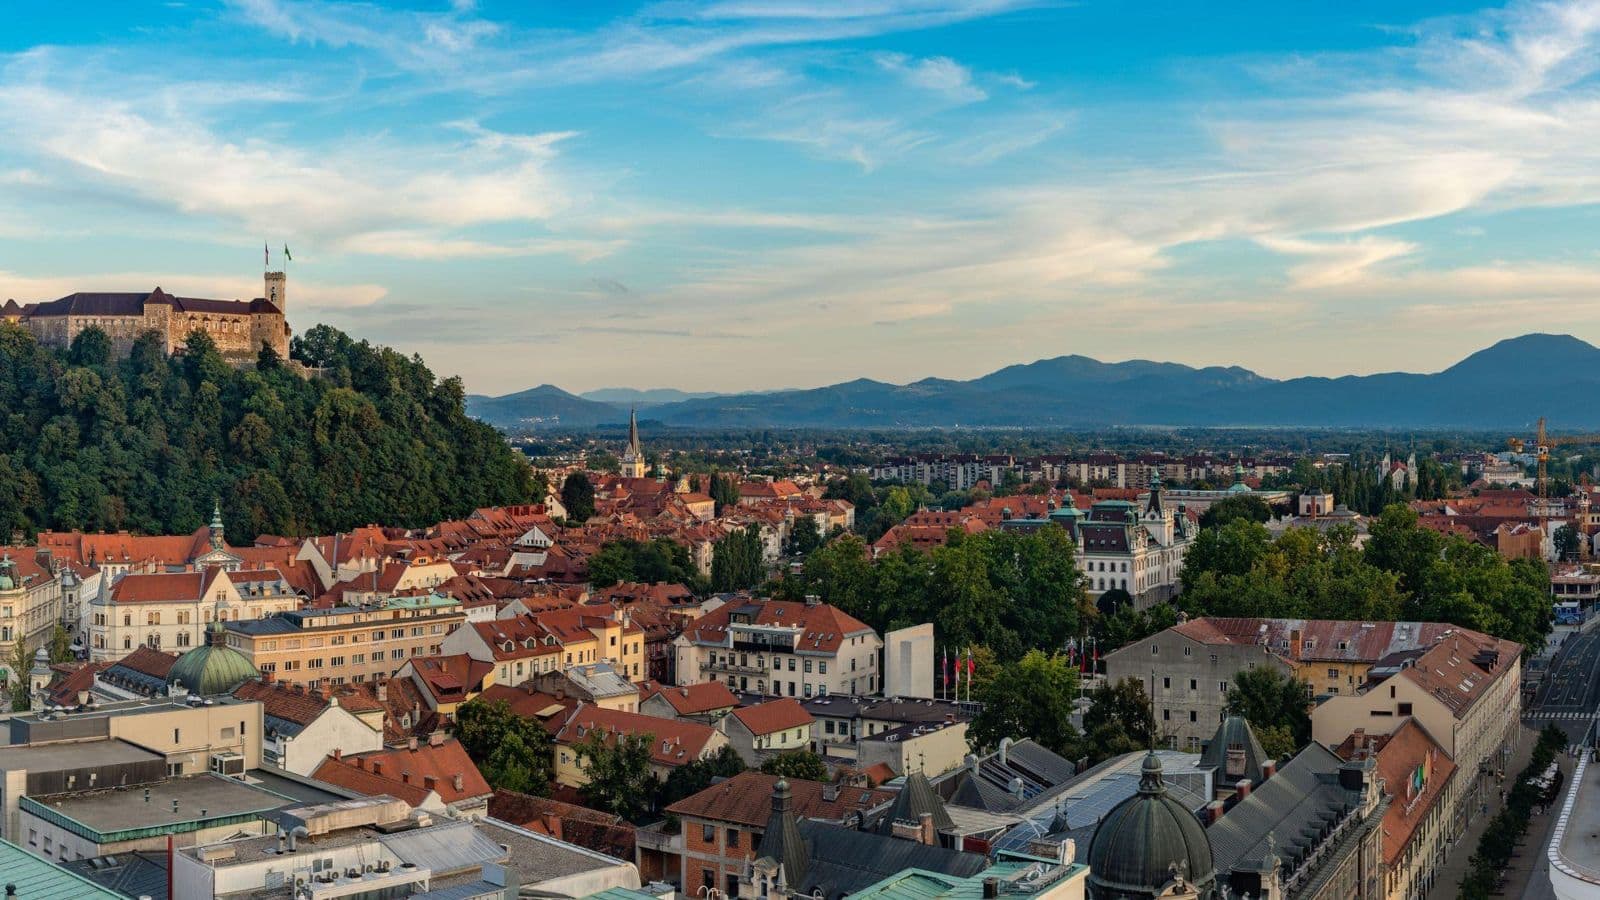 Take a tour of Ljubljana, Slovenia's dragon lore